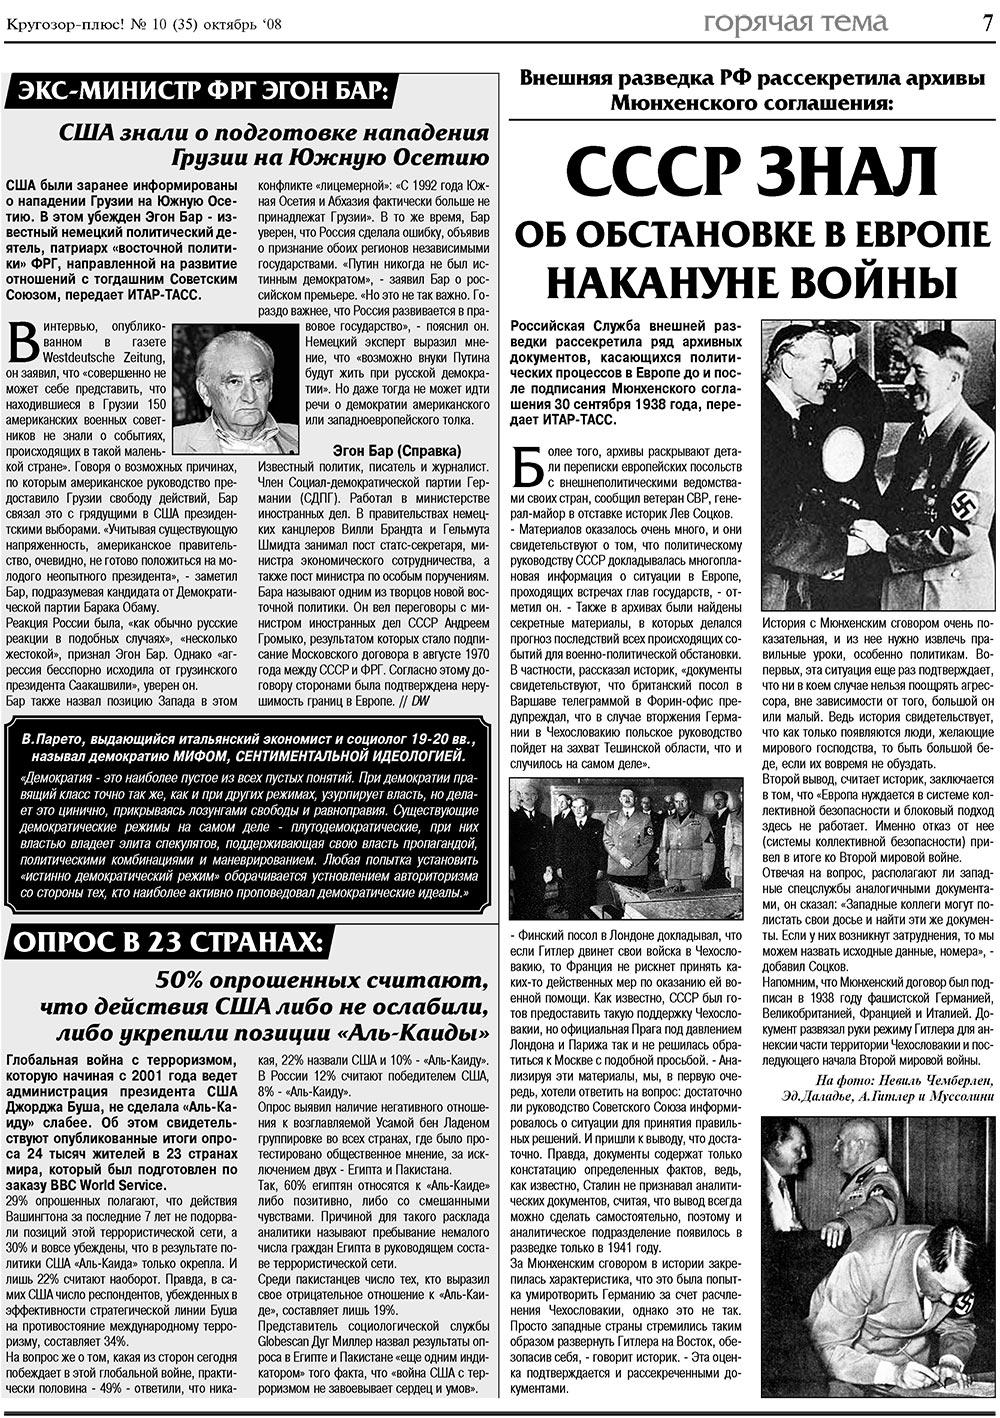 Кругозор плюс!, газета. 2008 №10 стр.7